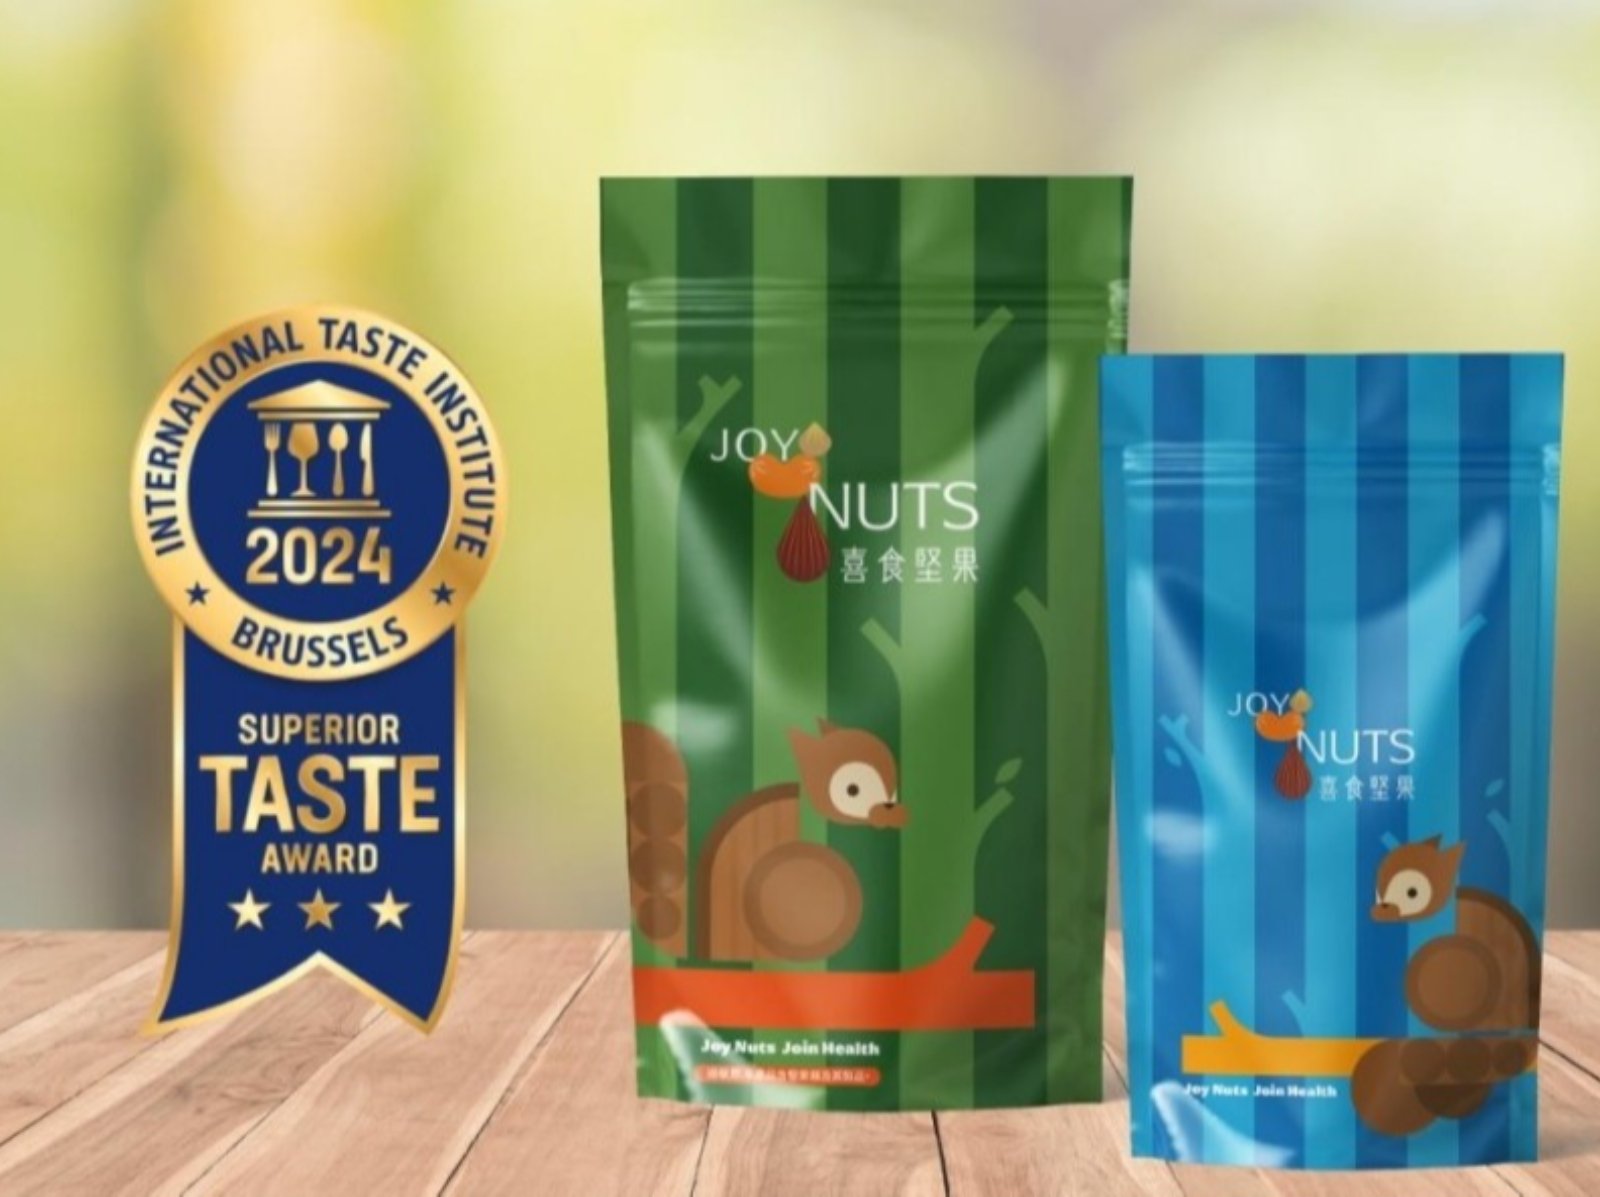 「喜食堅果 Joy Nuts」榮獲 2024 年度國際風味絕佳獎章 3 星獎章！